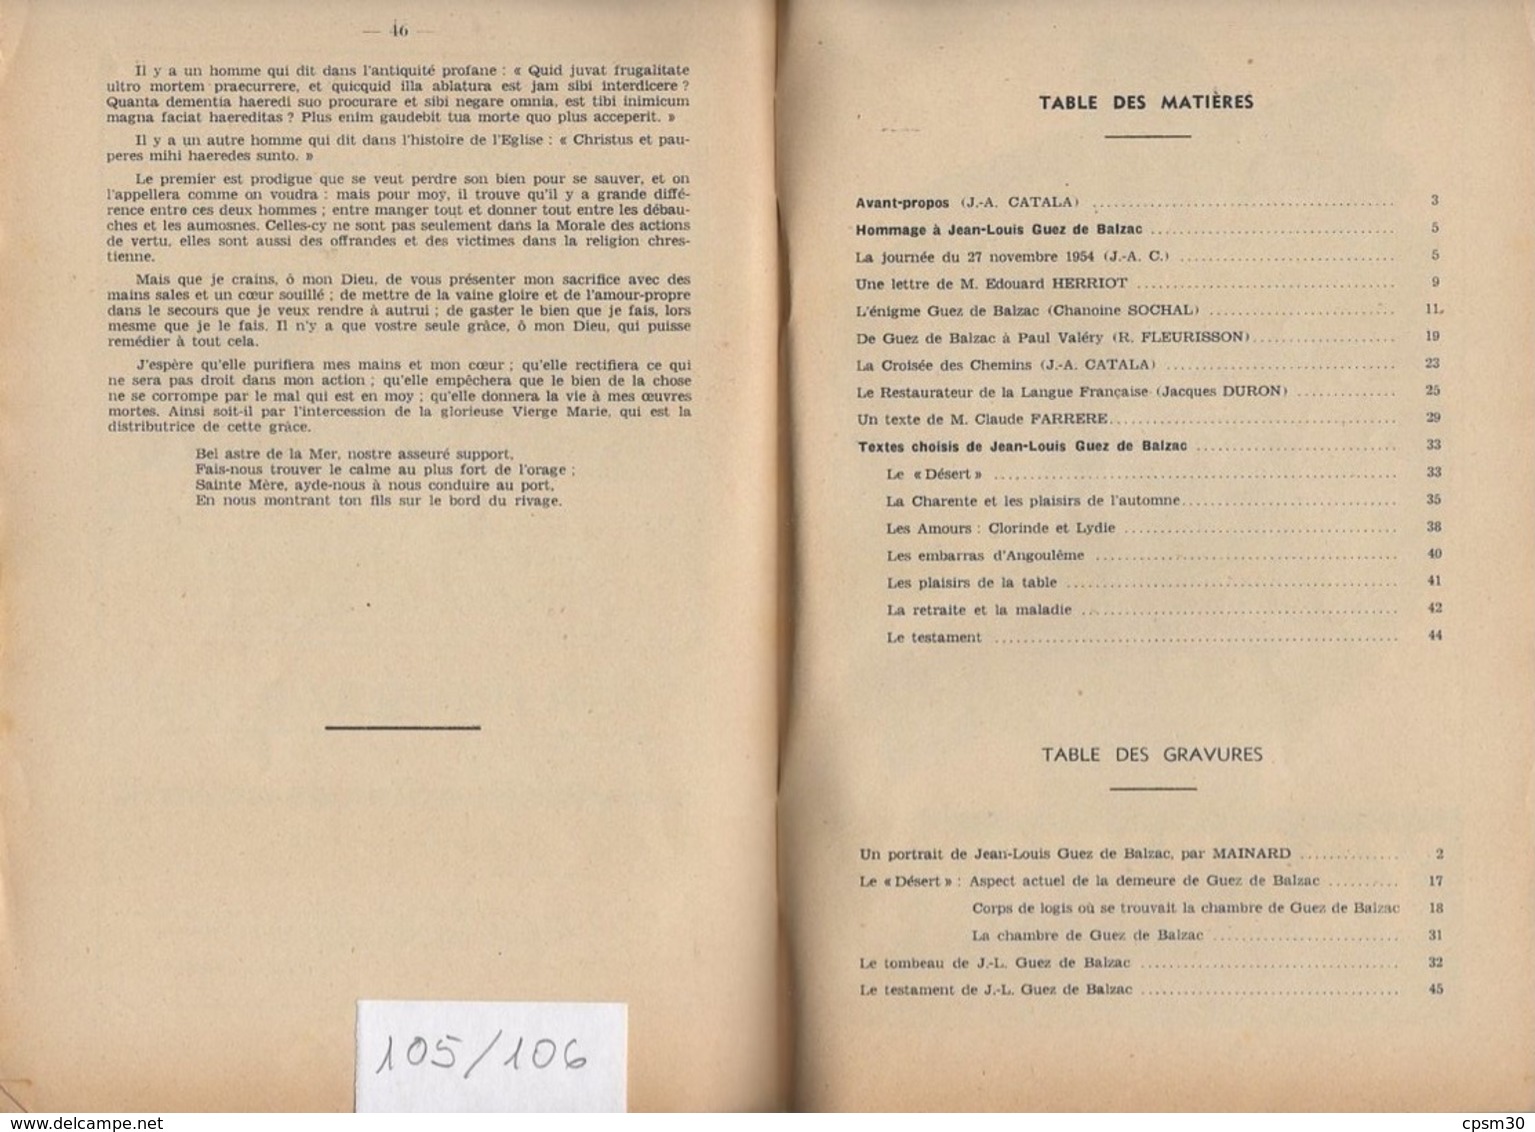 Revues "La Charente Touristique" Six Revues N° 105, 111, 117, 118, 120 Et 123, 1955 à 1959 - Poitou-Charentes